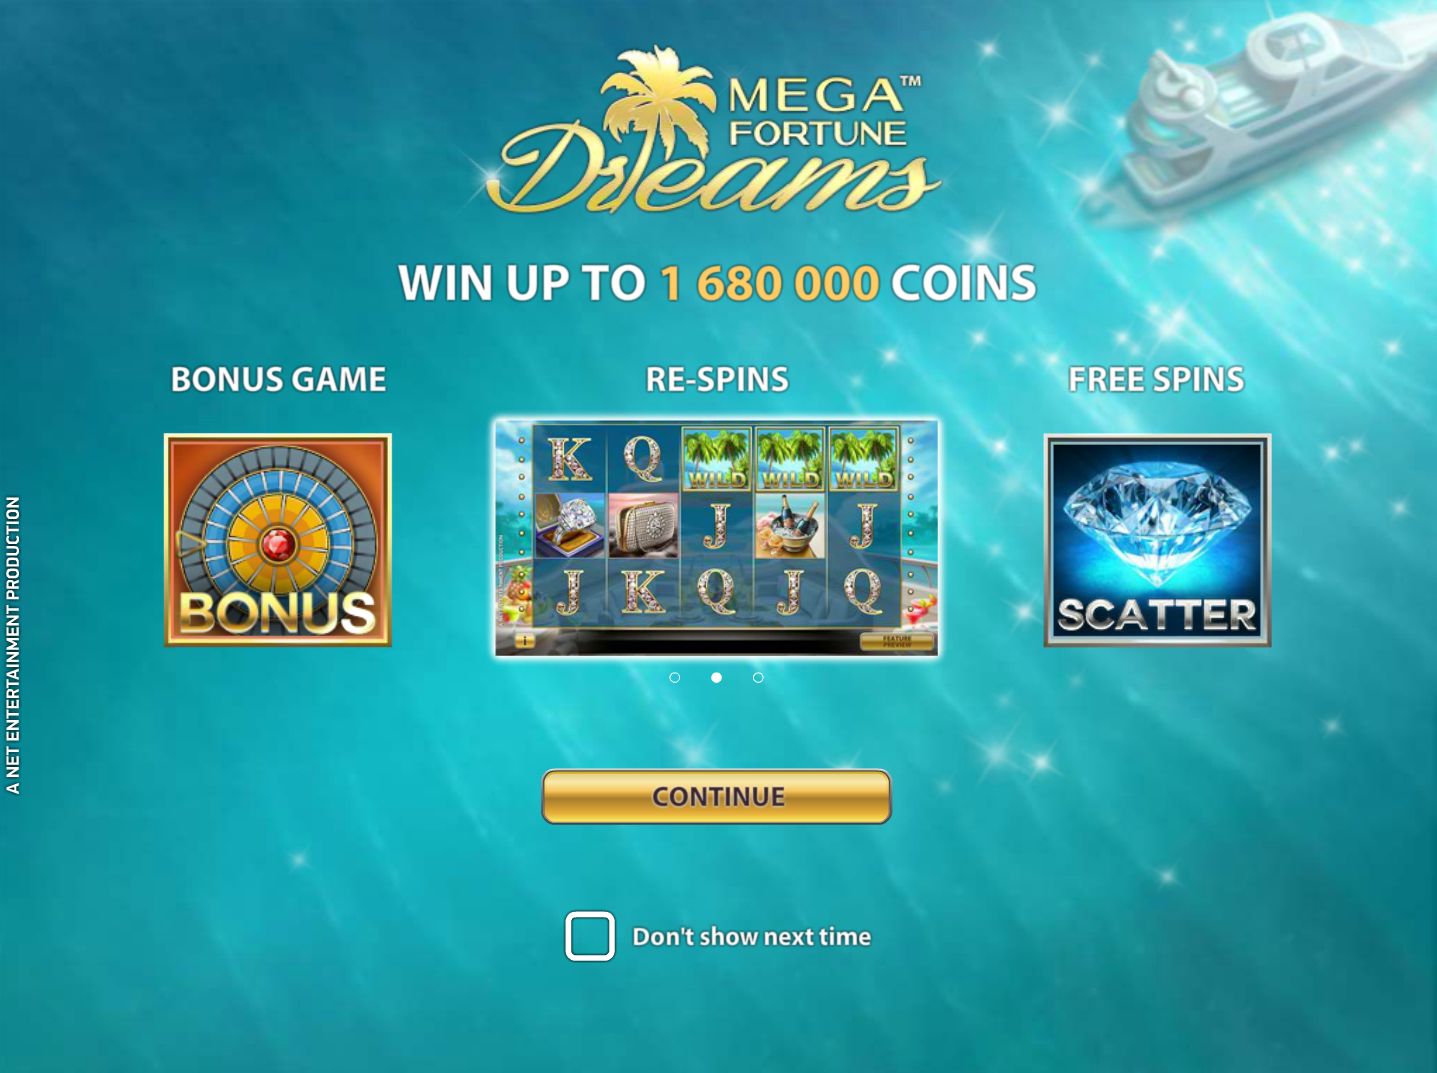 Mega Fortune Dreams Online Slot Game